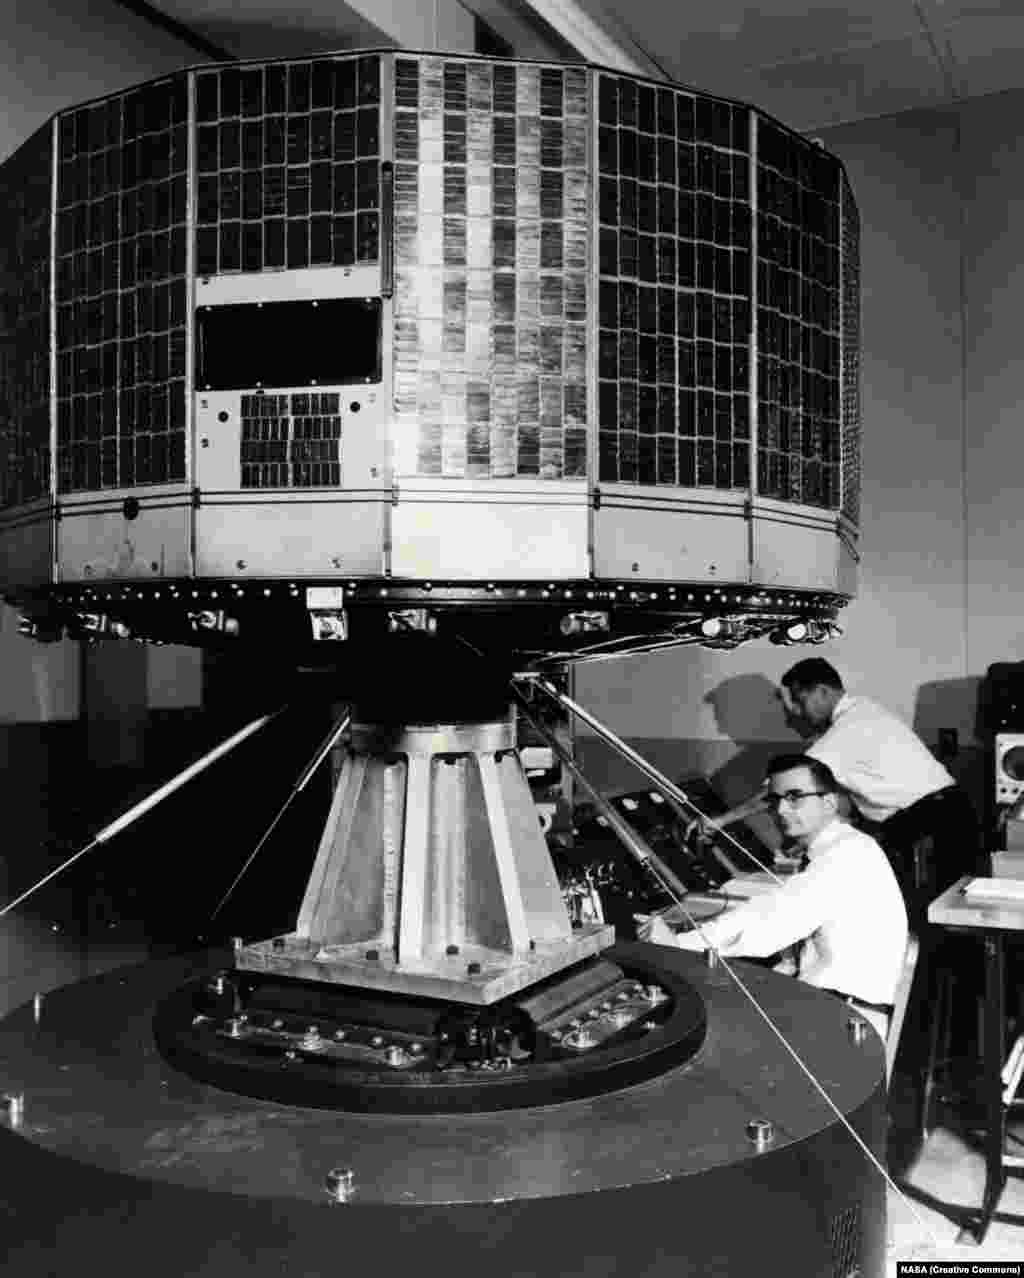 Принадлежащий НАСА метеоспутник Tiros 1 был запущен в 1960 году. На фотографии его трясут во время испытаний, чтобы понять, перенесет ли дорогу оборудование. Tiros &ndash; первая попытка создать спутник для прогноза погоды. Он был оборудован двумя камерами, которые посылали сводки в центр управления полетом на Земле.&nbsp;